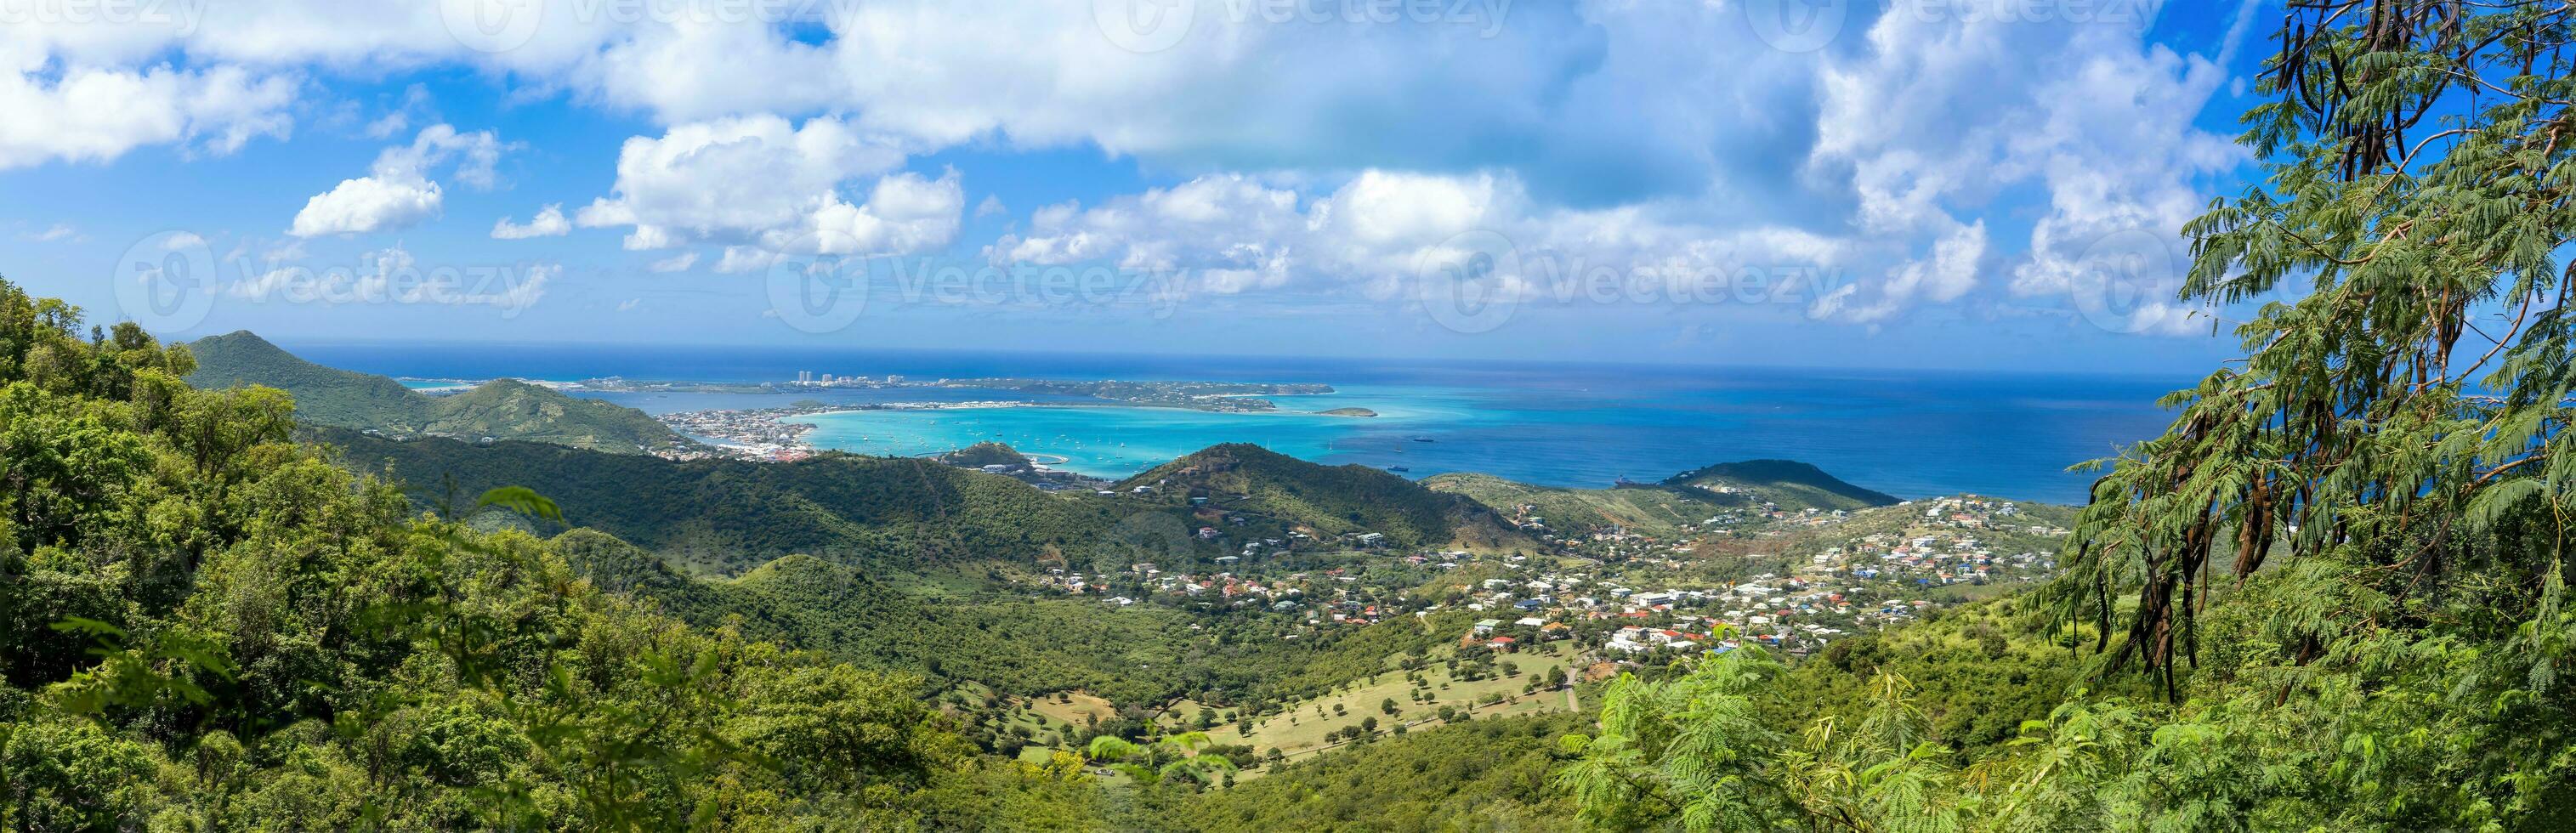 caraïben reis vakantie, panoramisch horizon van heilige Martin eiland van foto paradis pas op